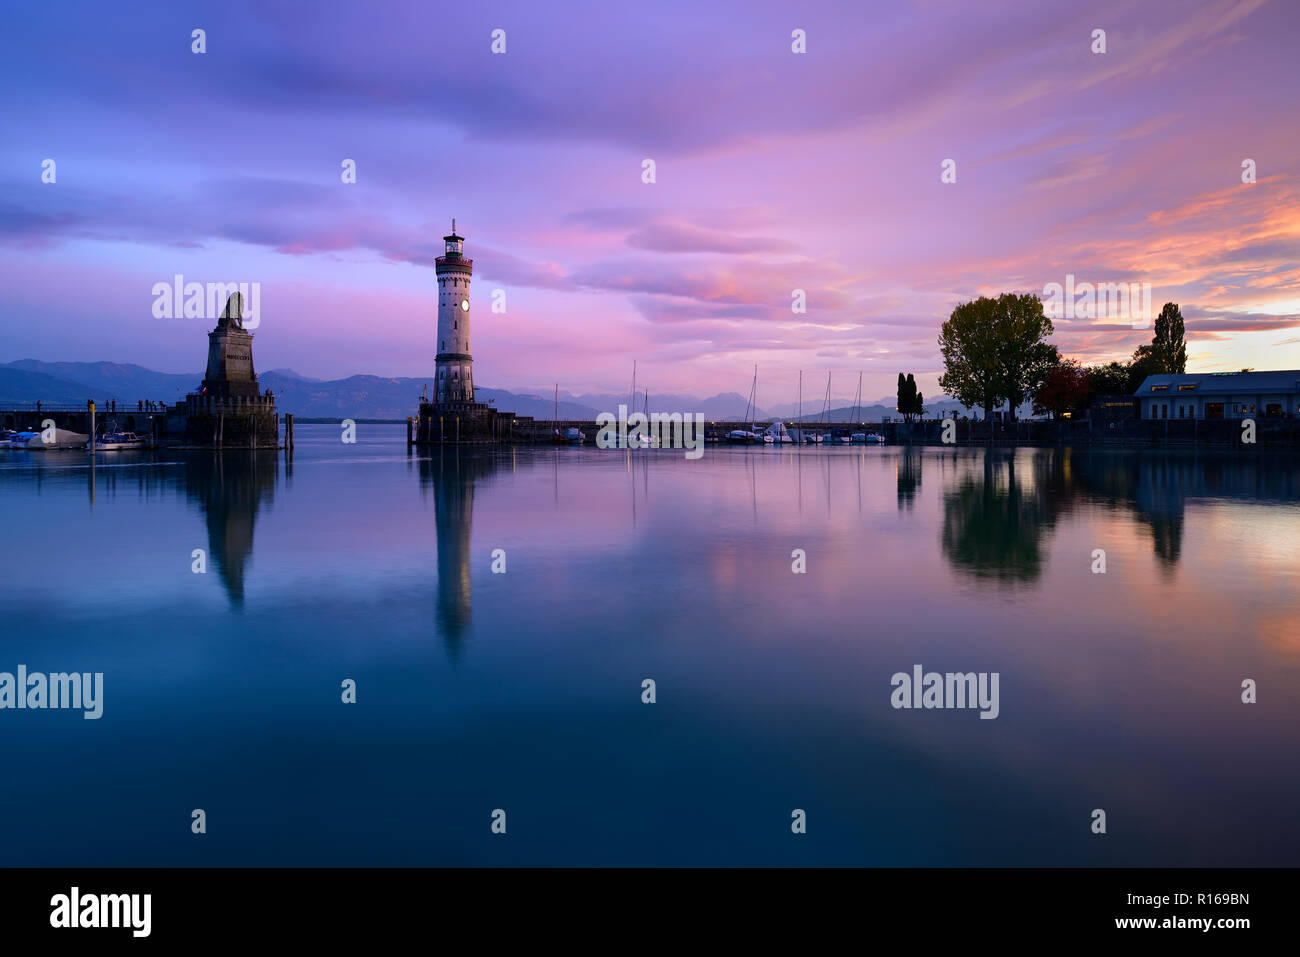 Hafen mit Leuchtturm, Sonnenuntergang, Wasser Reflexion, Lindau, Bodensee, Bayern, Deutschland Stockfoto